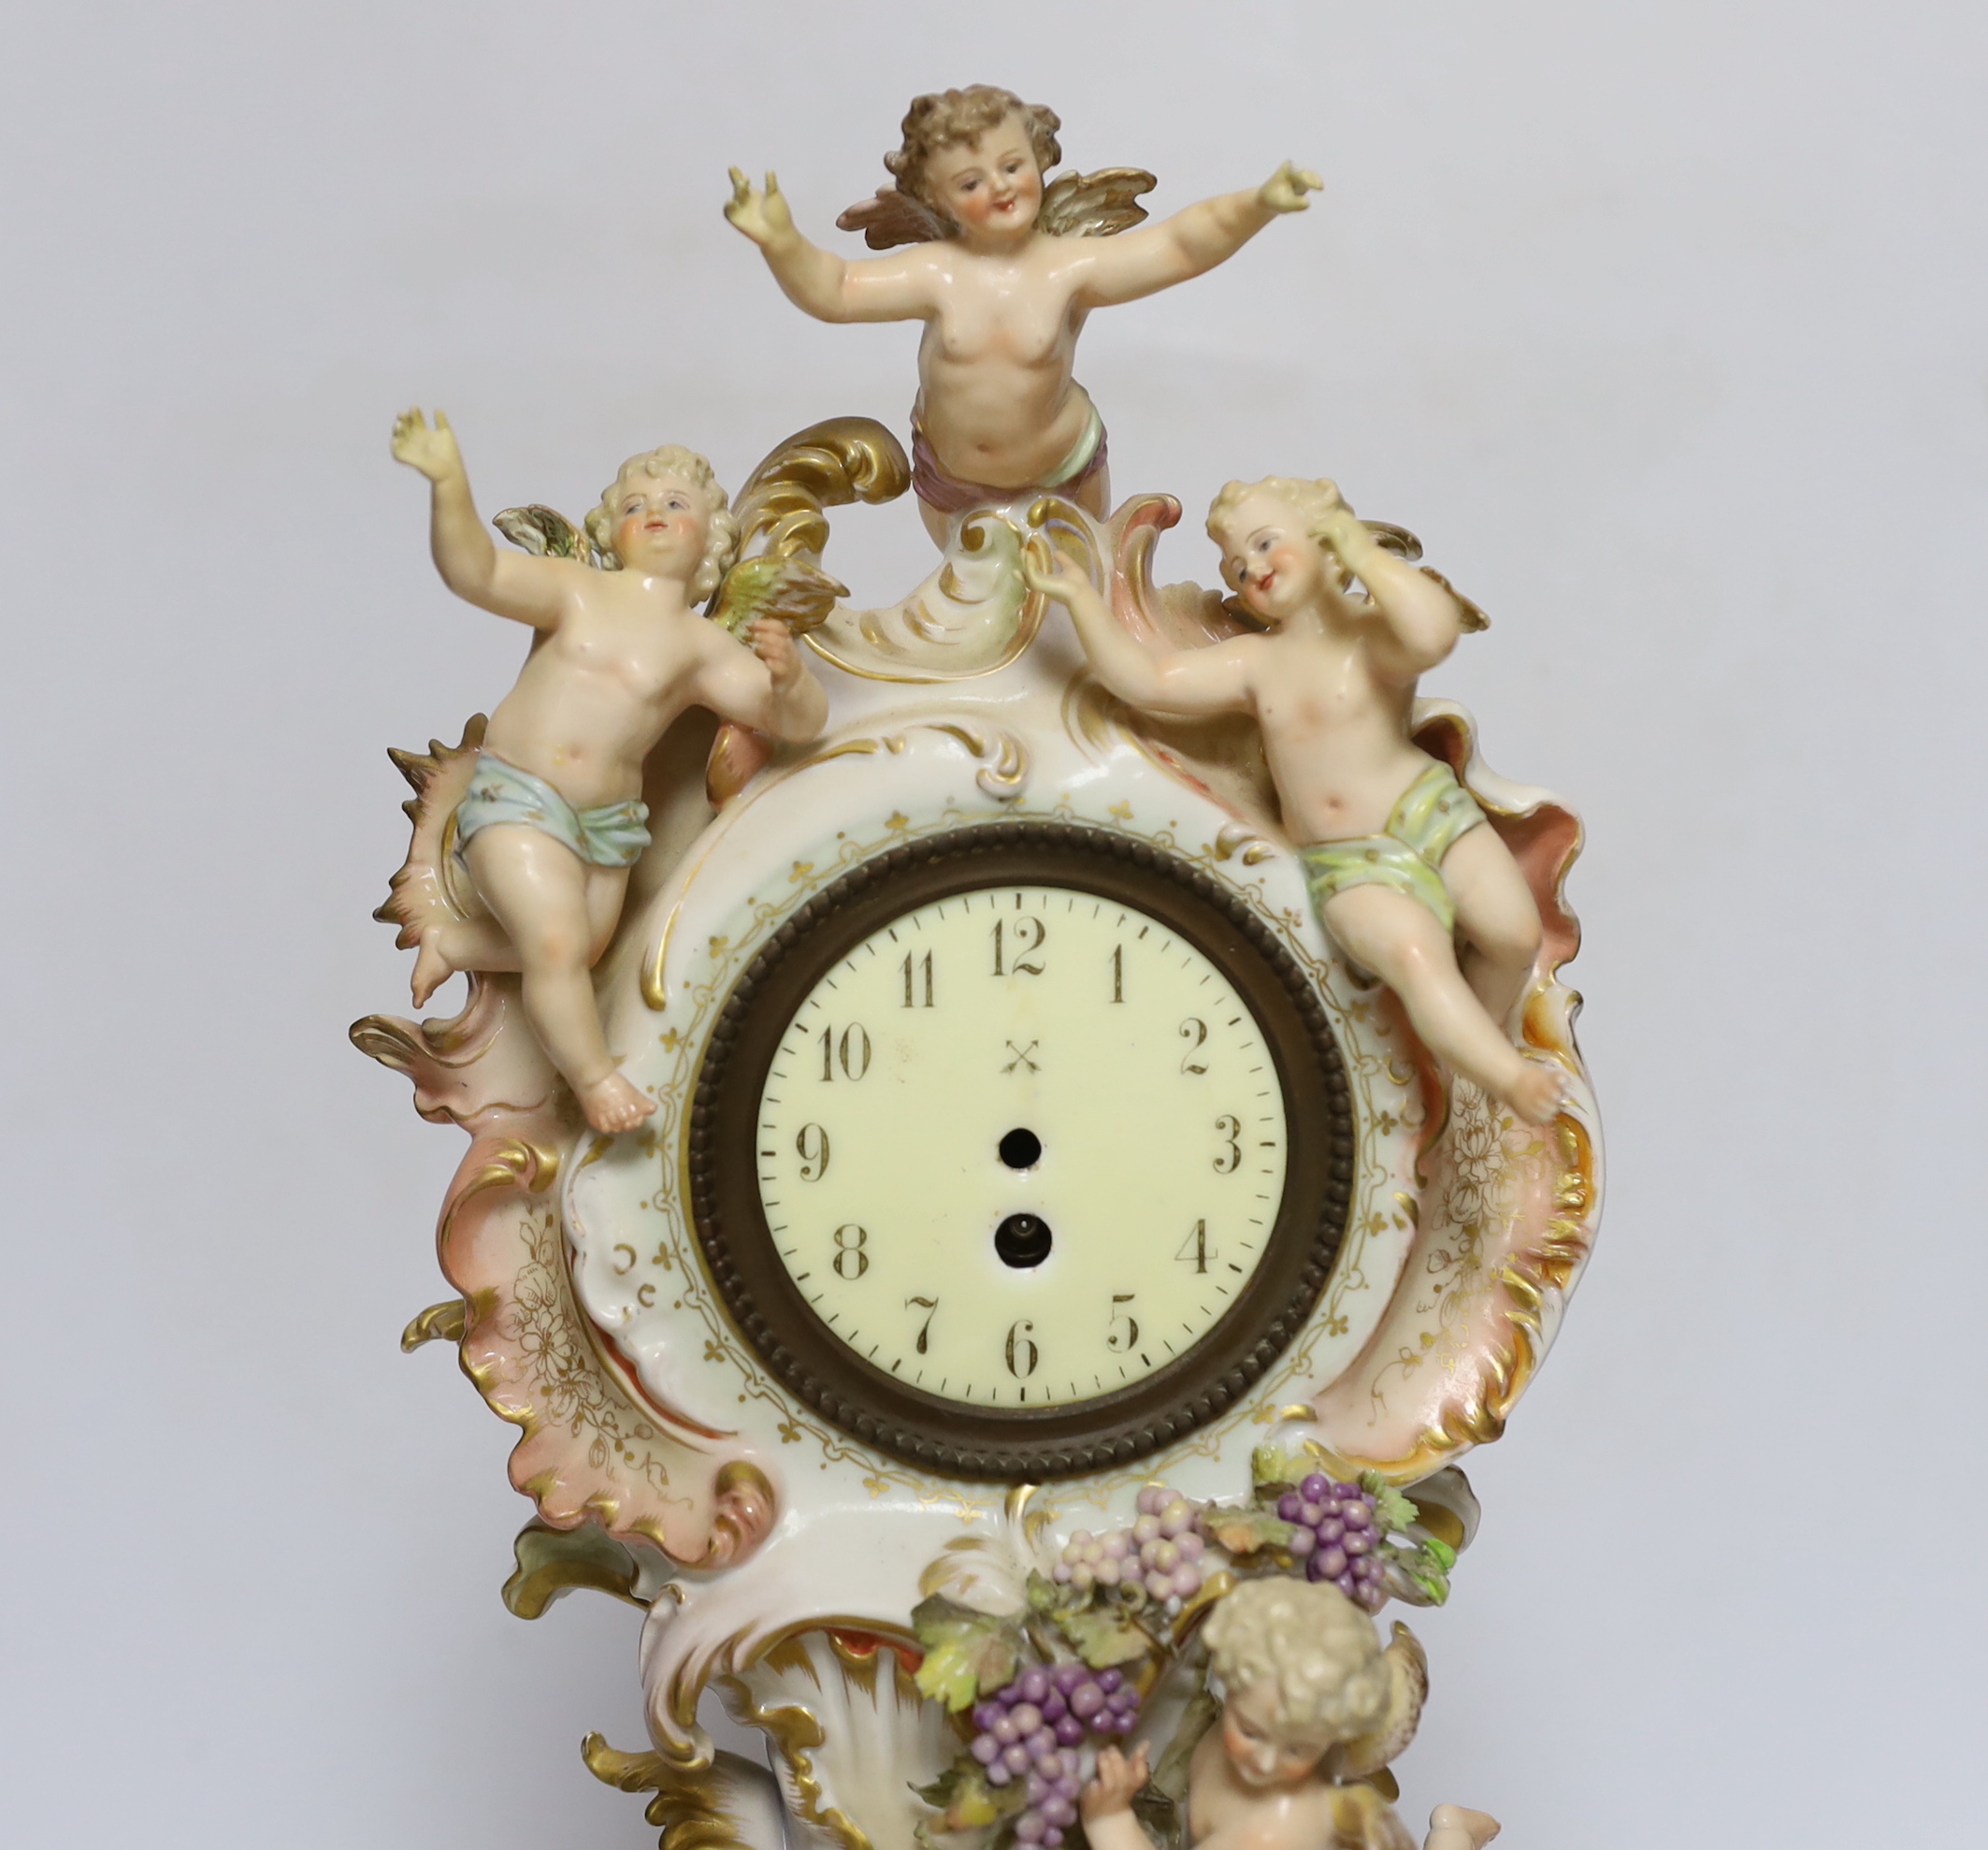 A Continental porcelain figural mantel clock, no movement